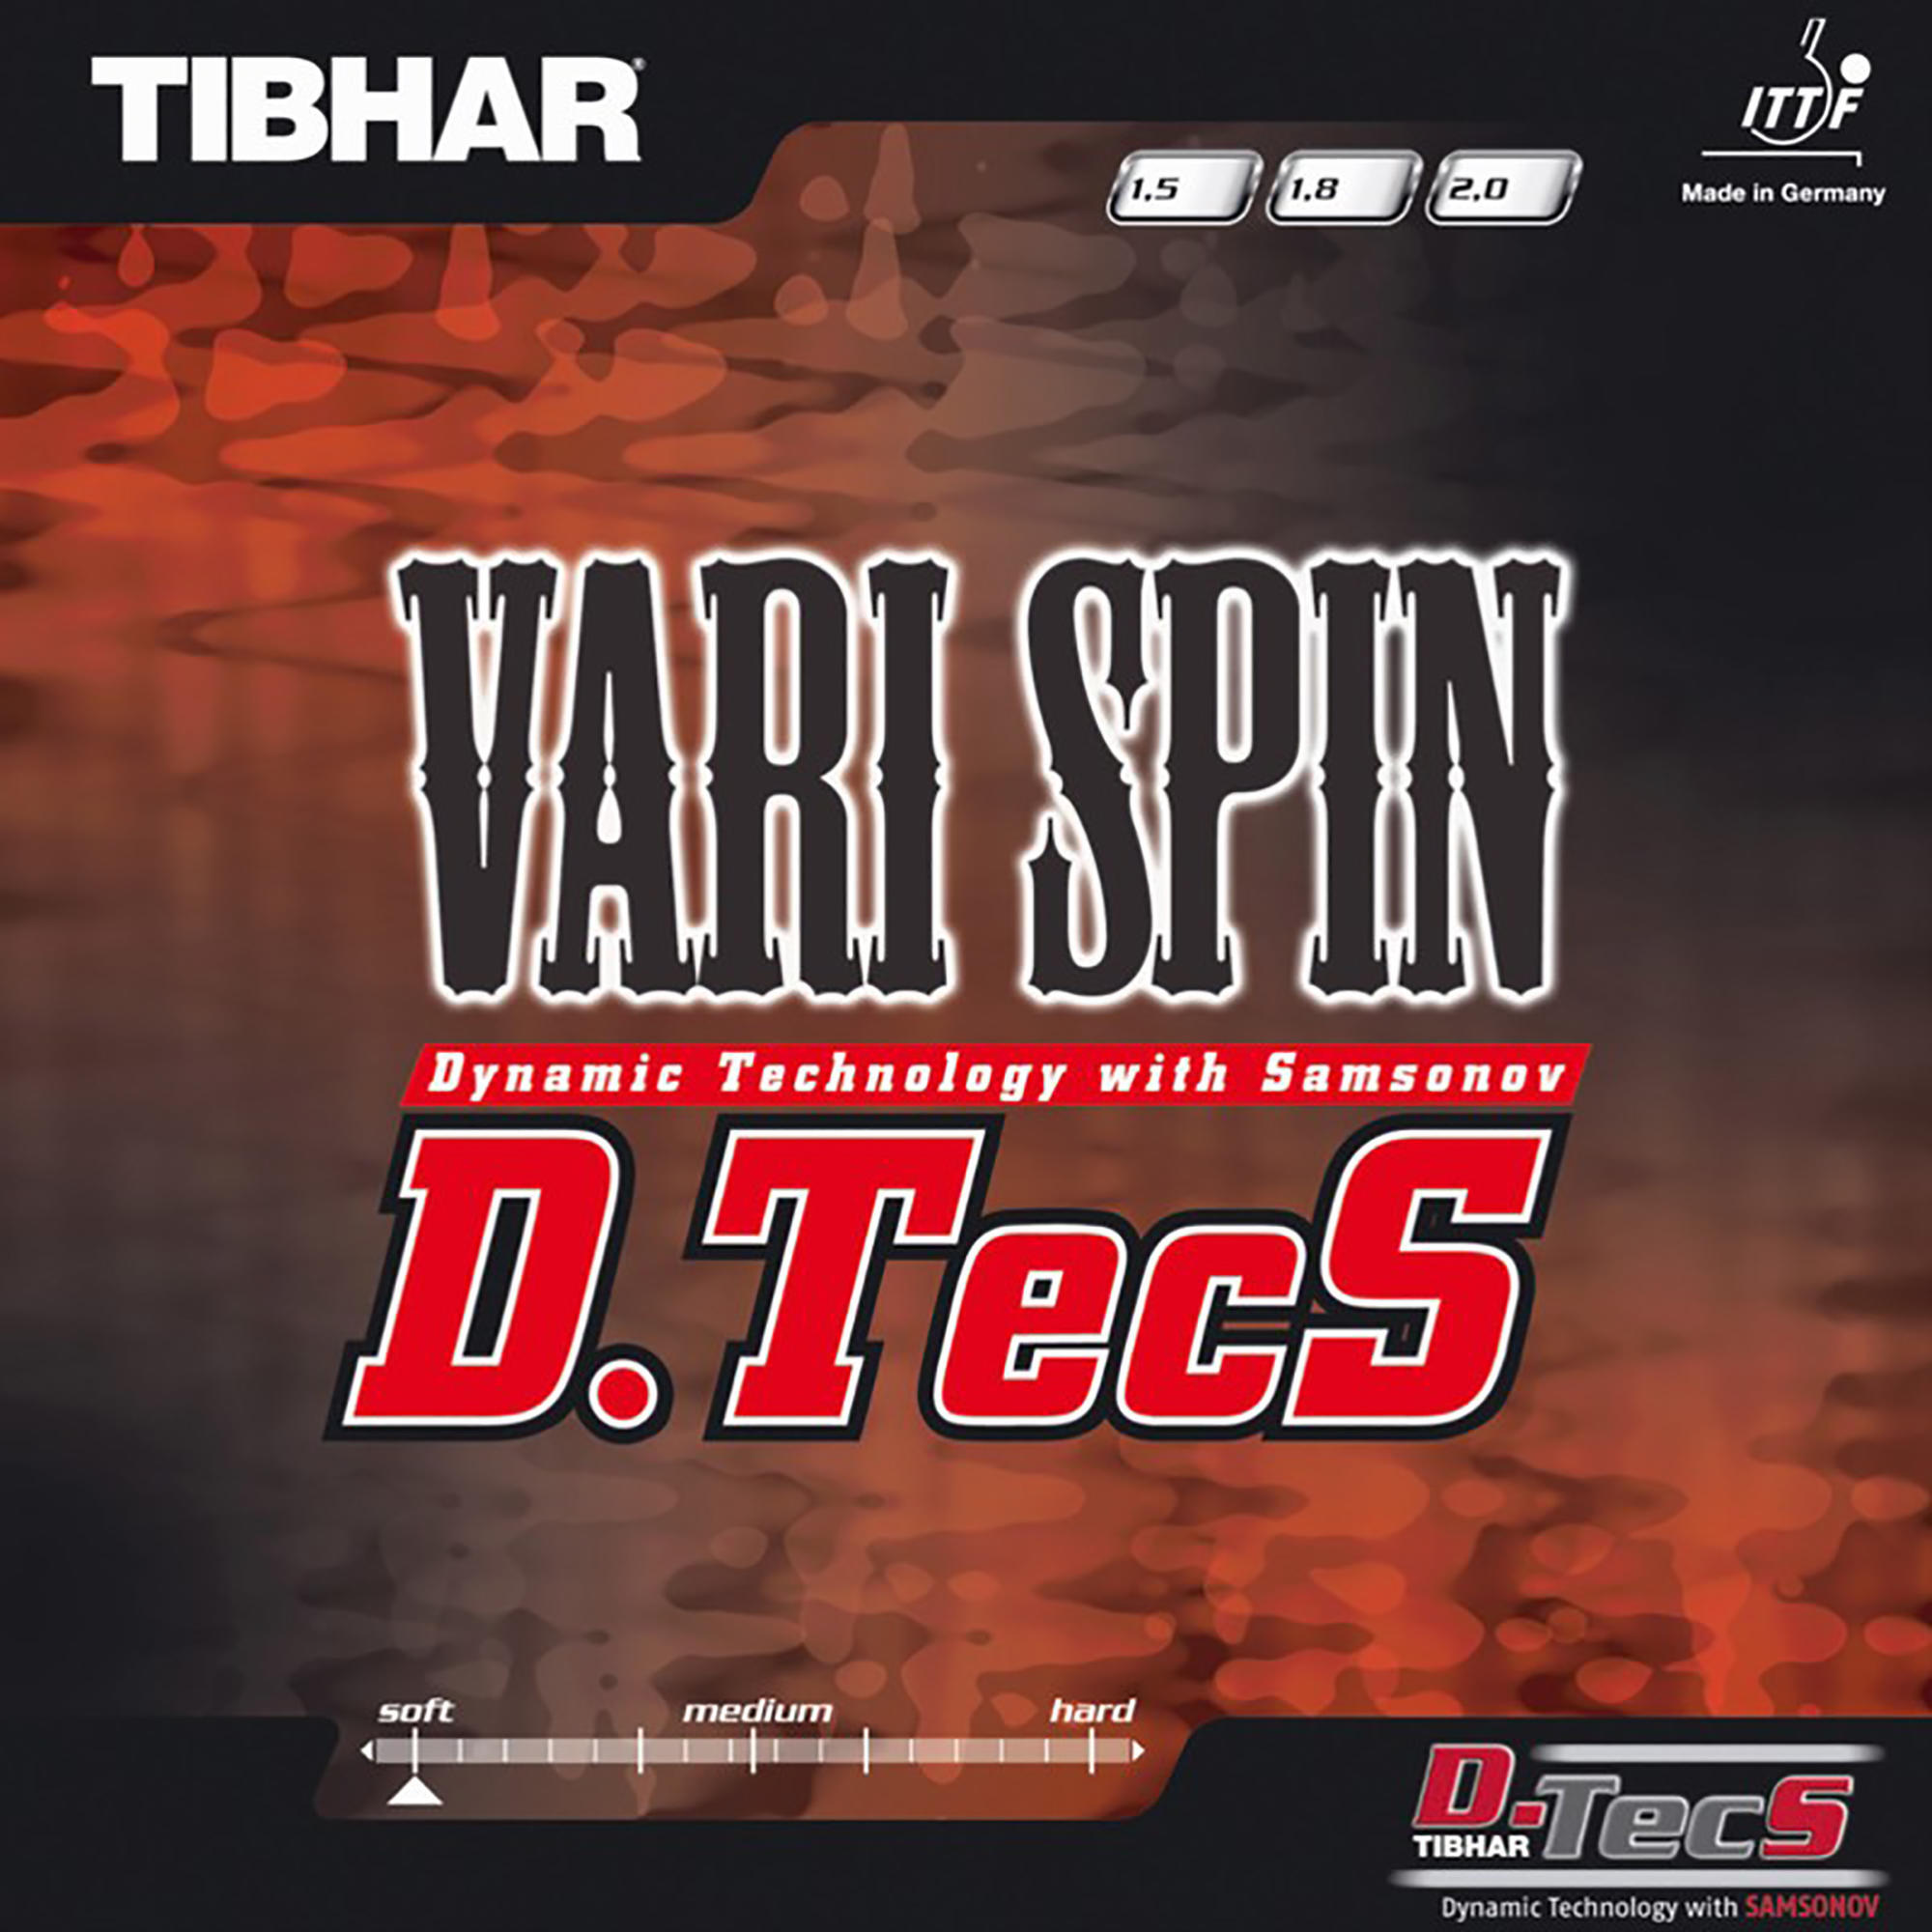 Накладка для настольного тенниса Vari Spin D.TecS TIBHAR